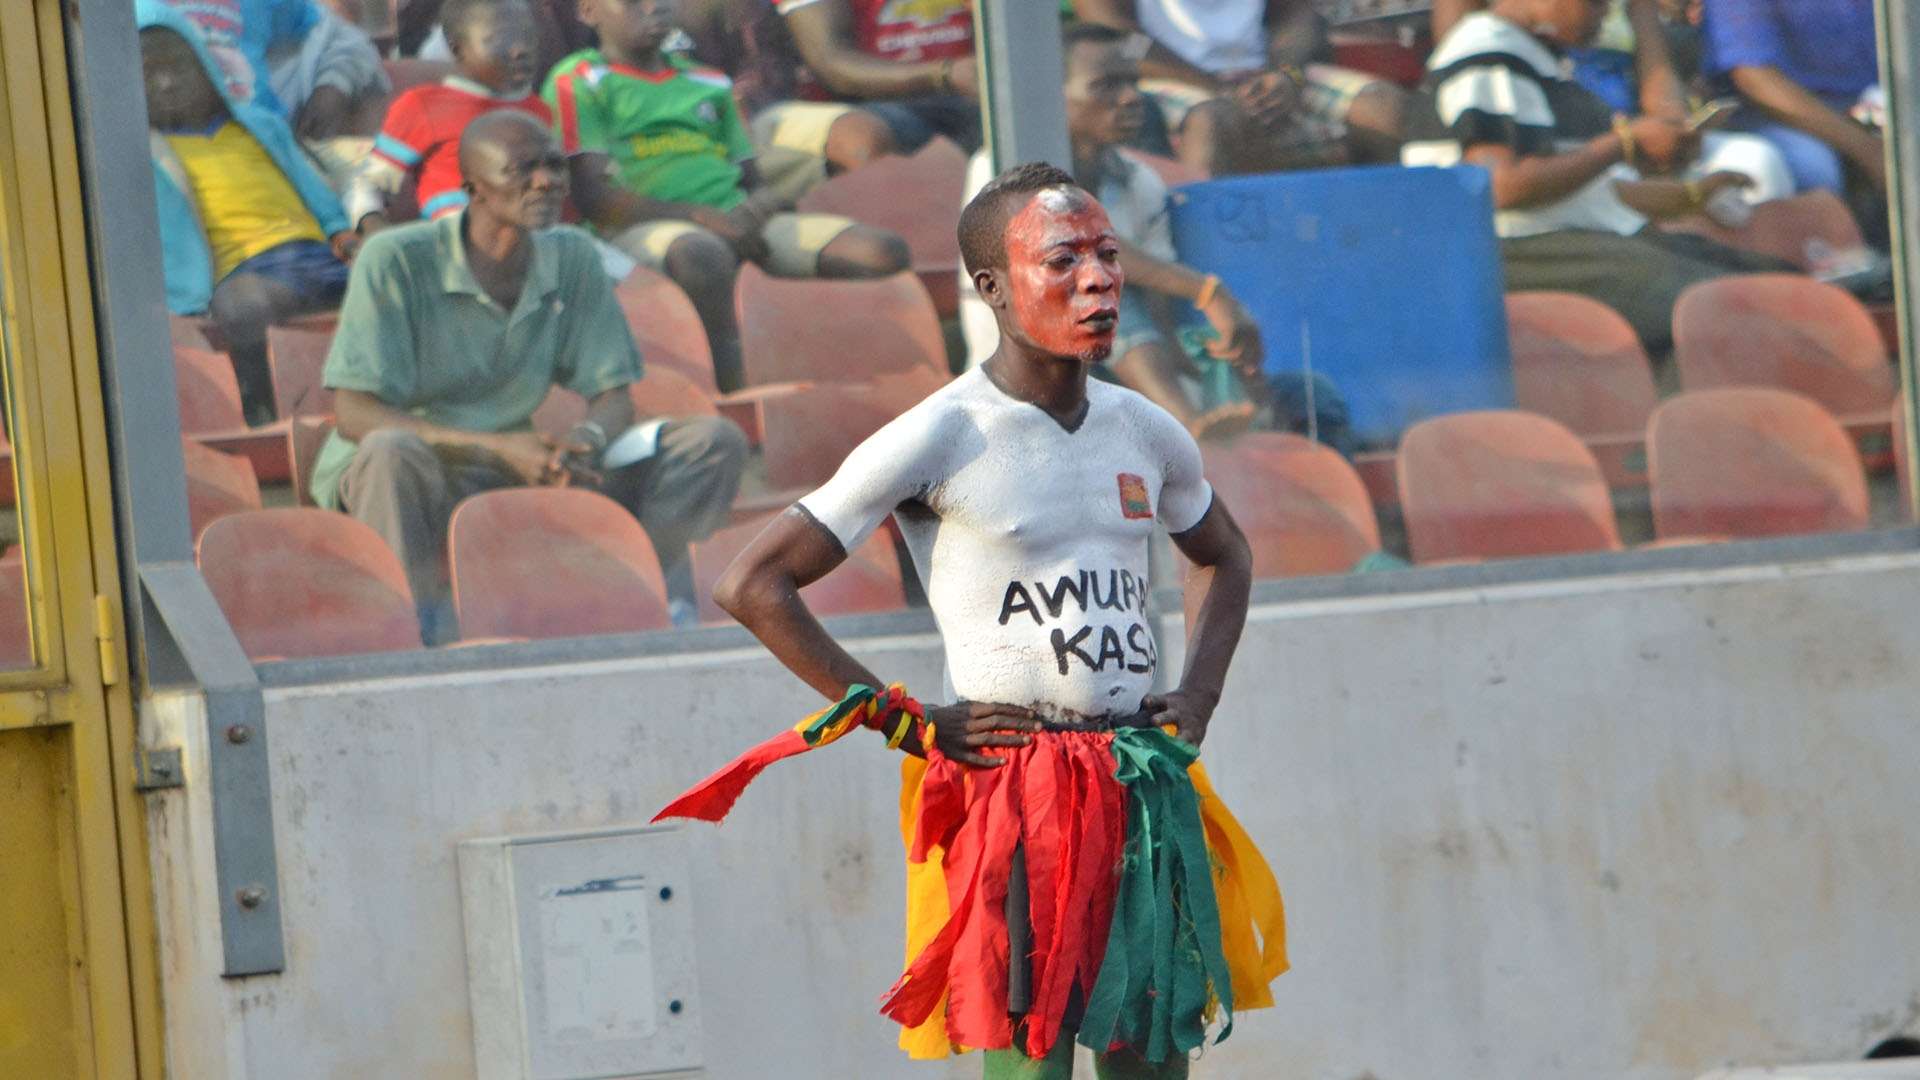 Ghana fan